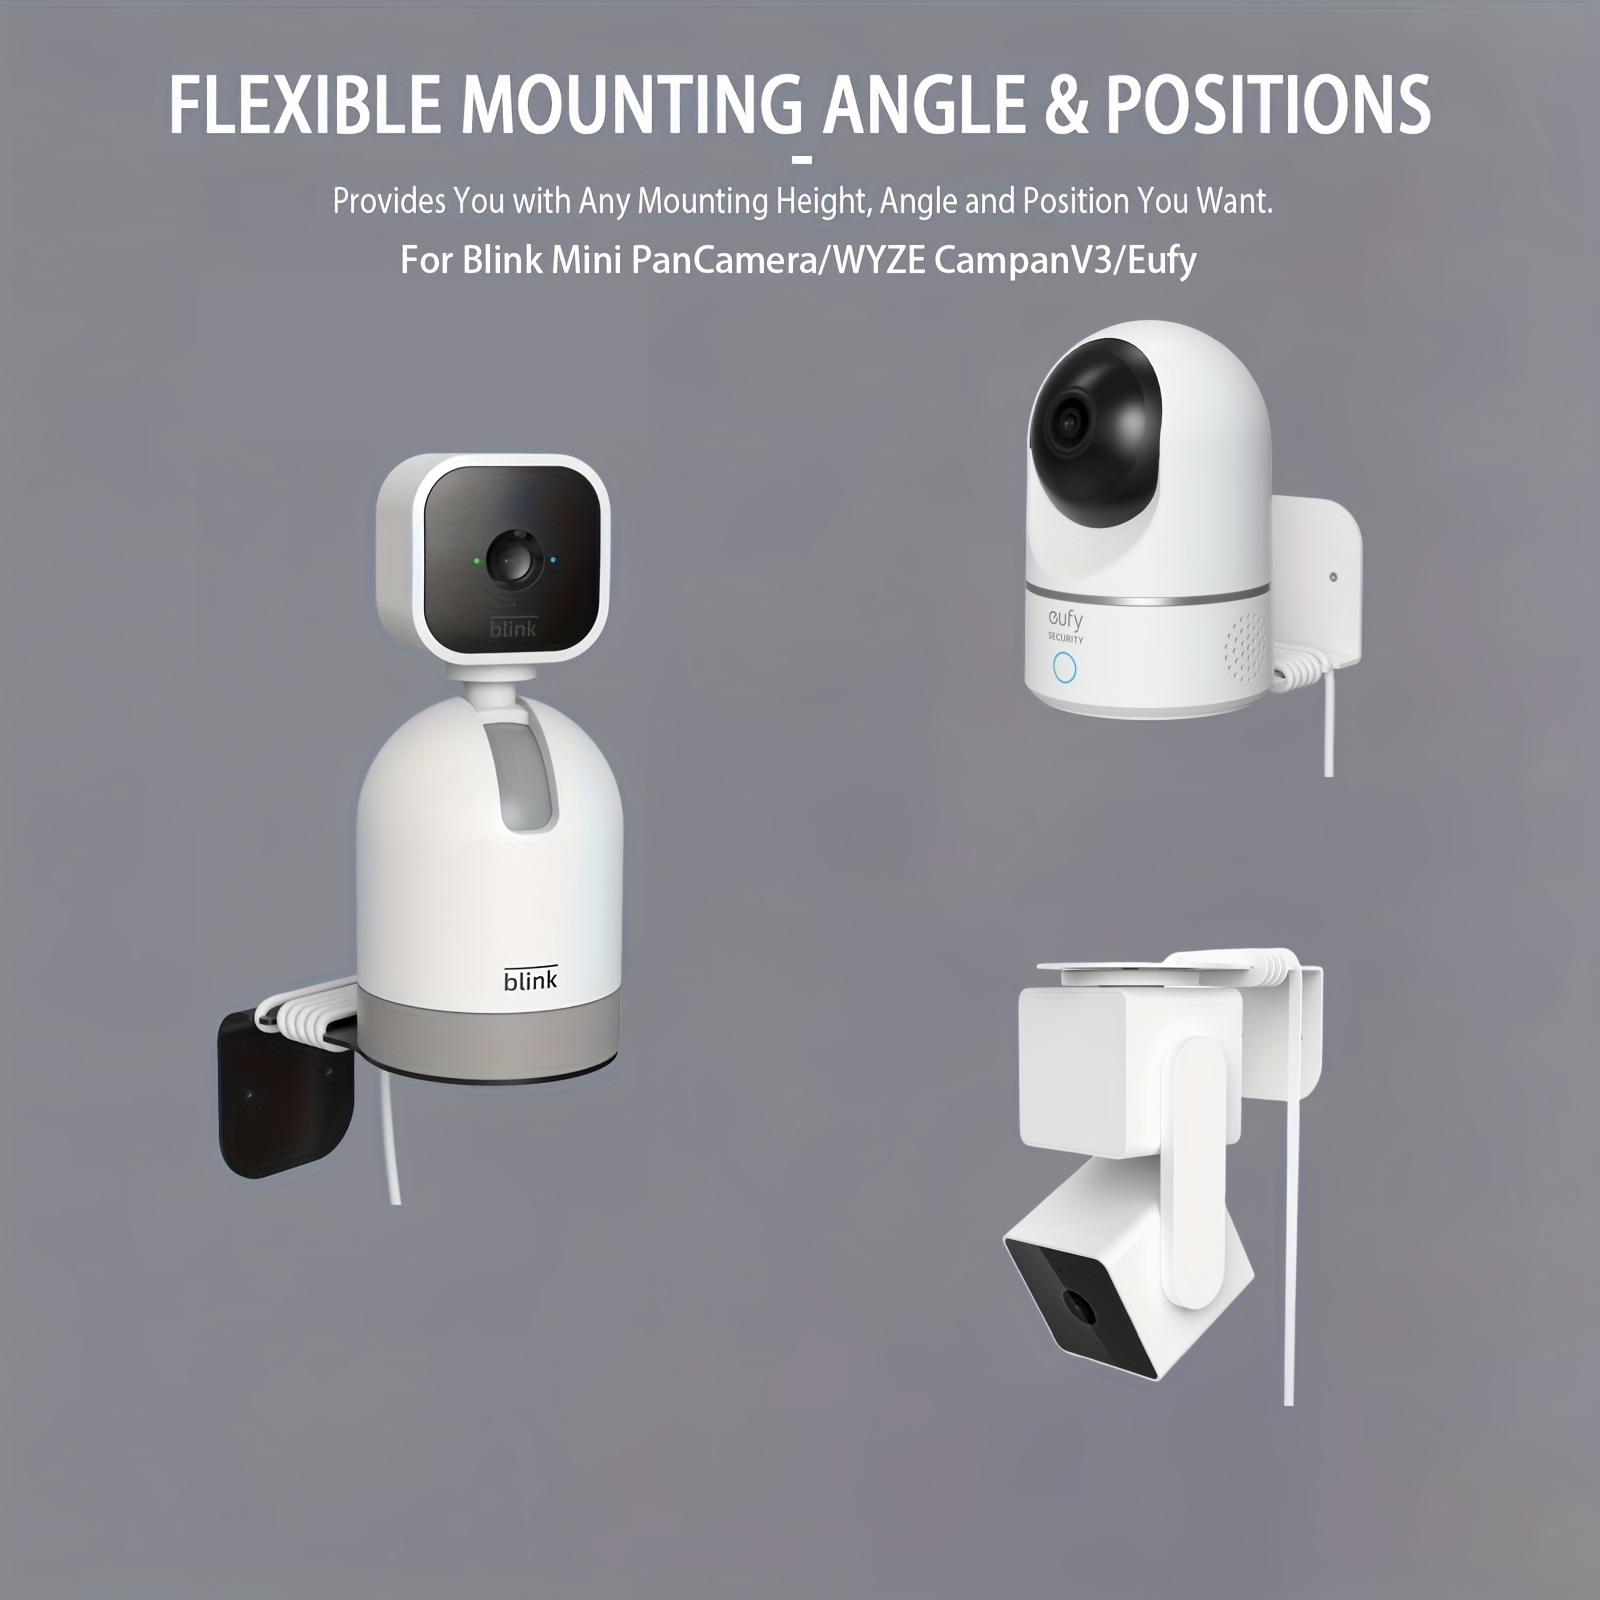 Soporte de montaje de cámara de seguridad de vigilancia, soporte de pared  universal ajustable para cámaras de seguridad CCTV, cámaras IP, cámara domo